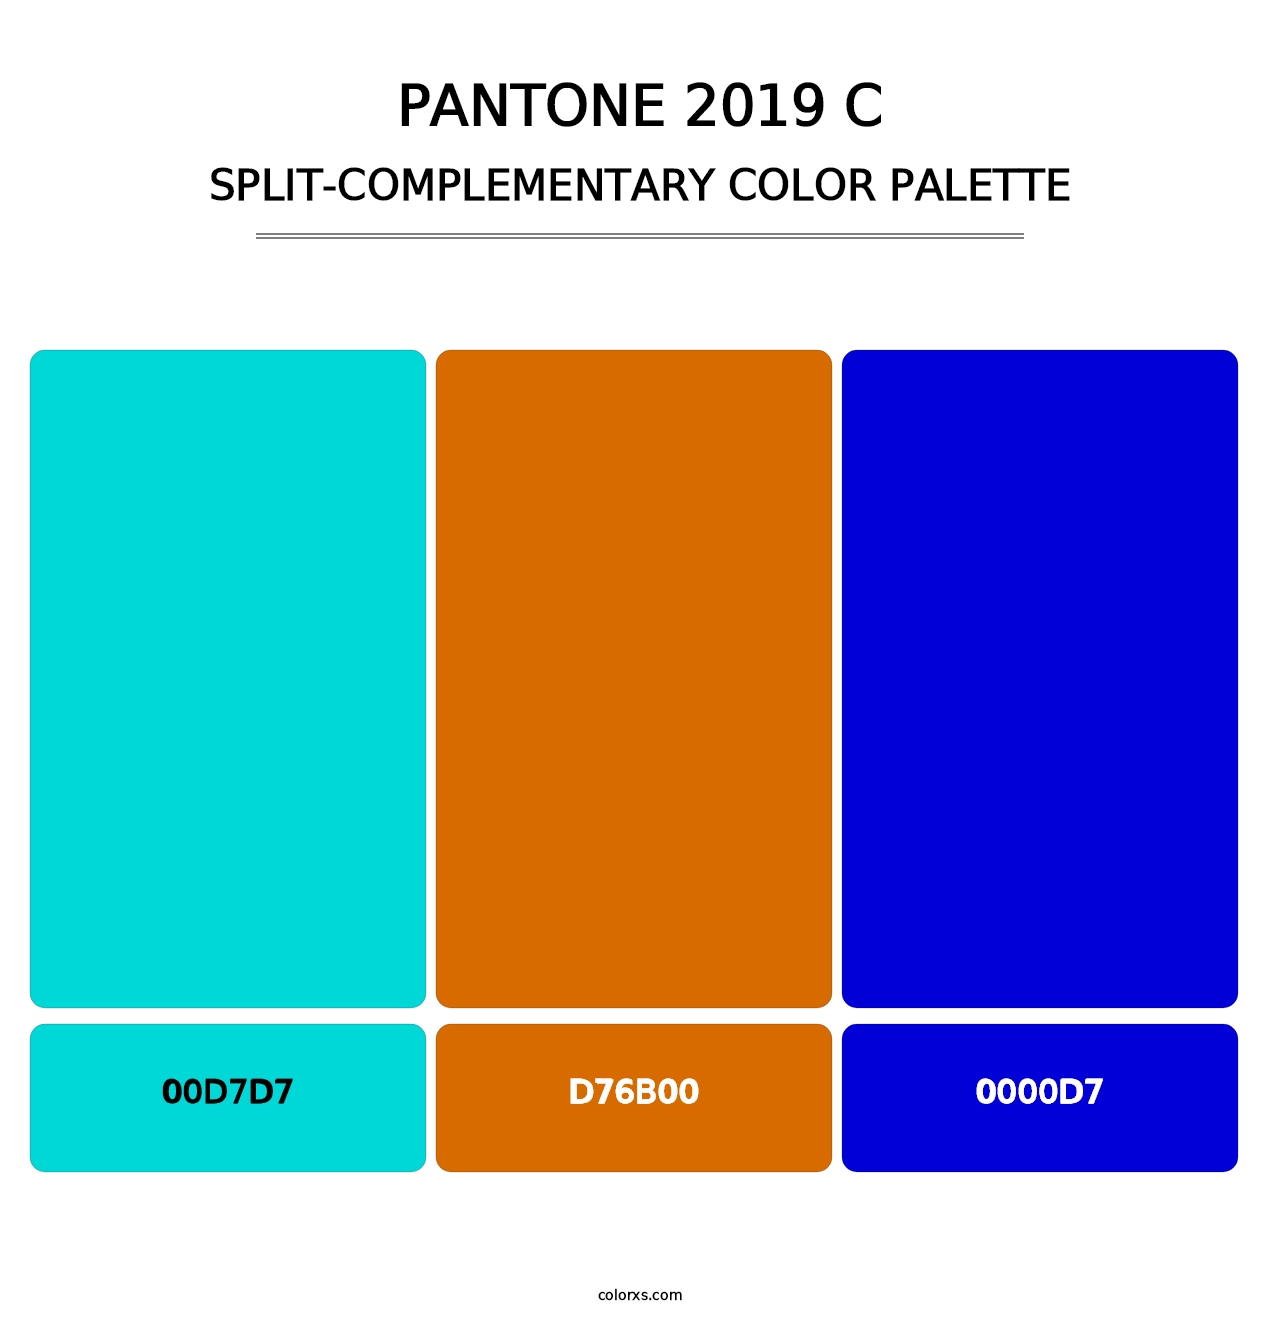 PANTONE 2019 C - Split-Complementary Color Palette